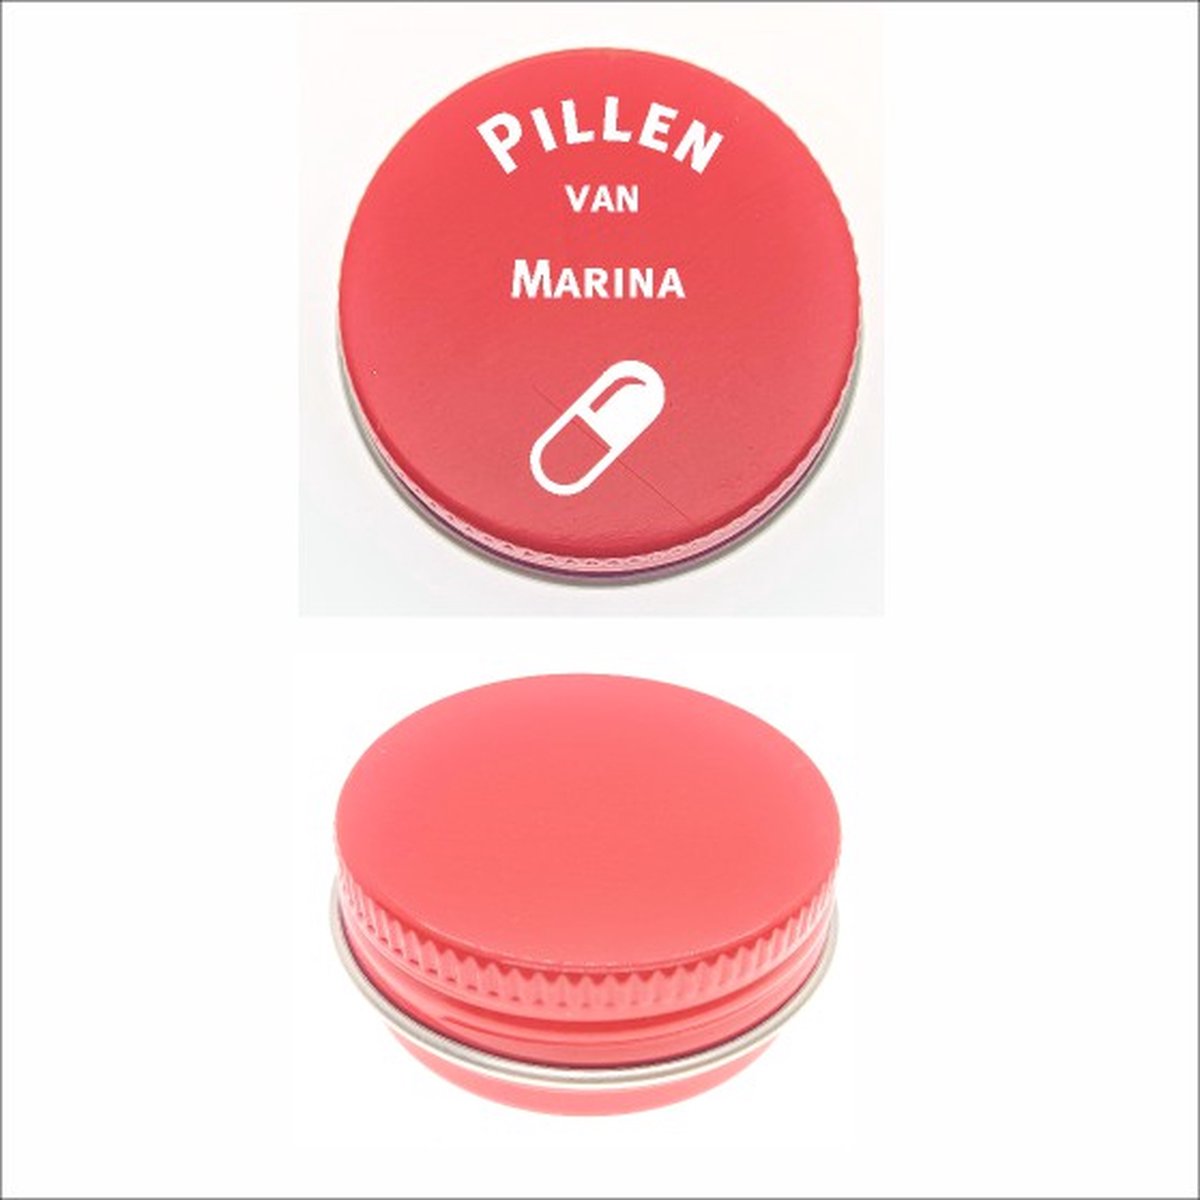 Pillen Blikje Met Naam Gravering - Marina